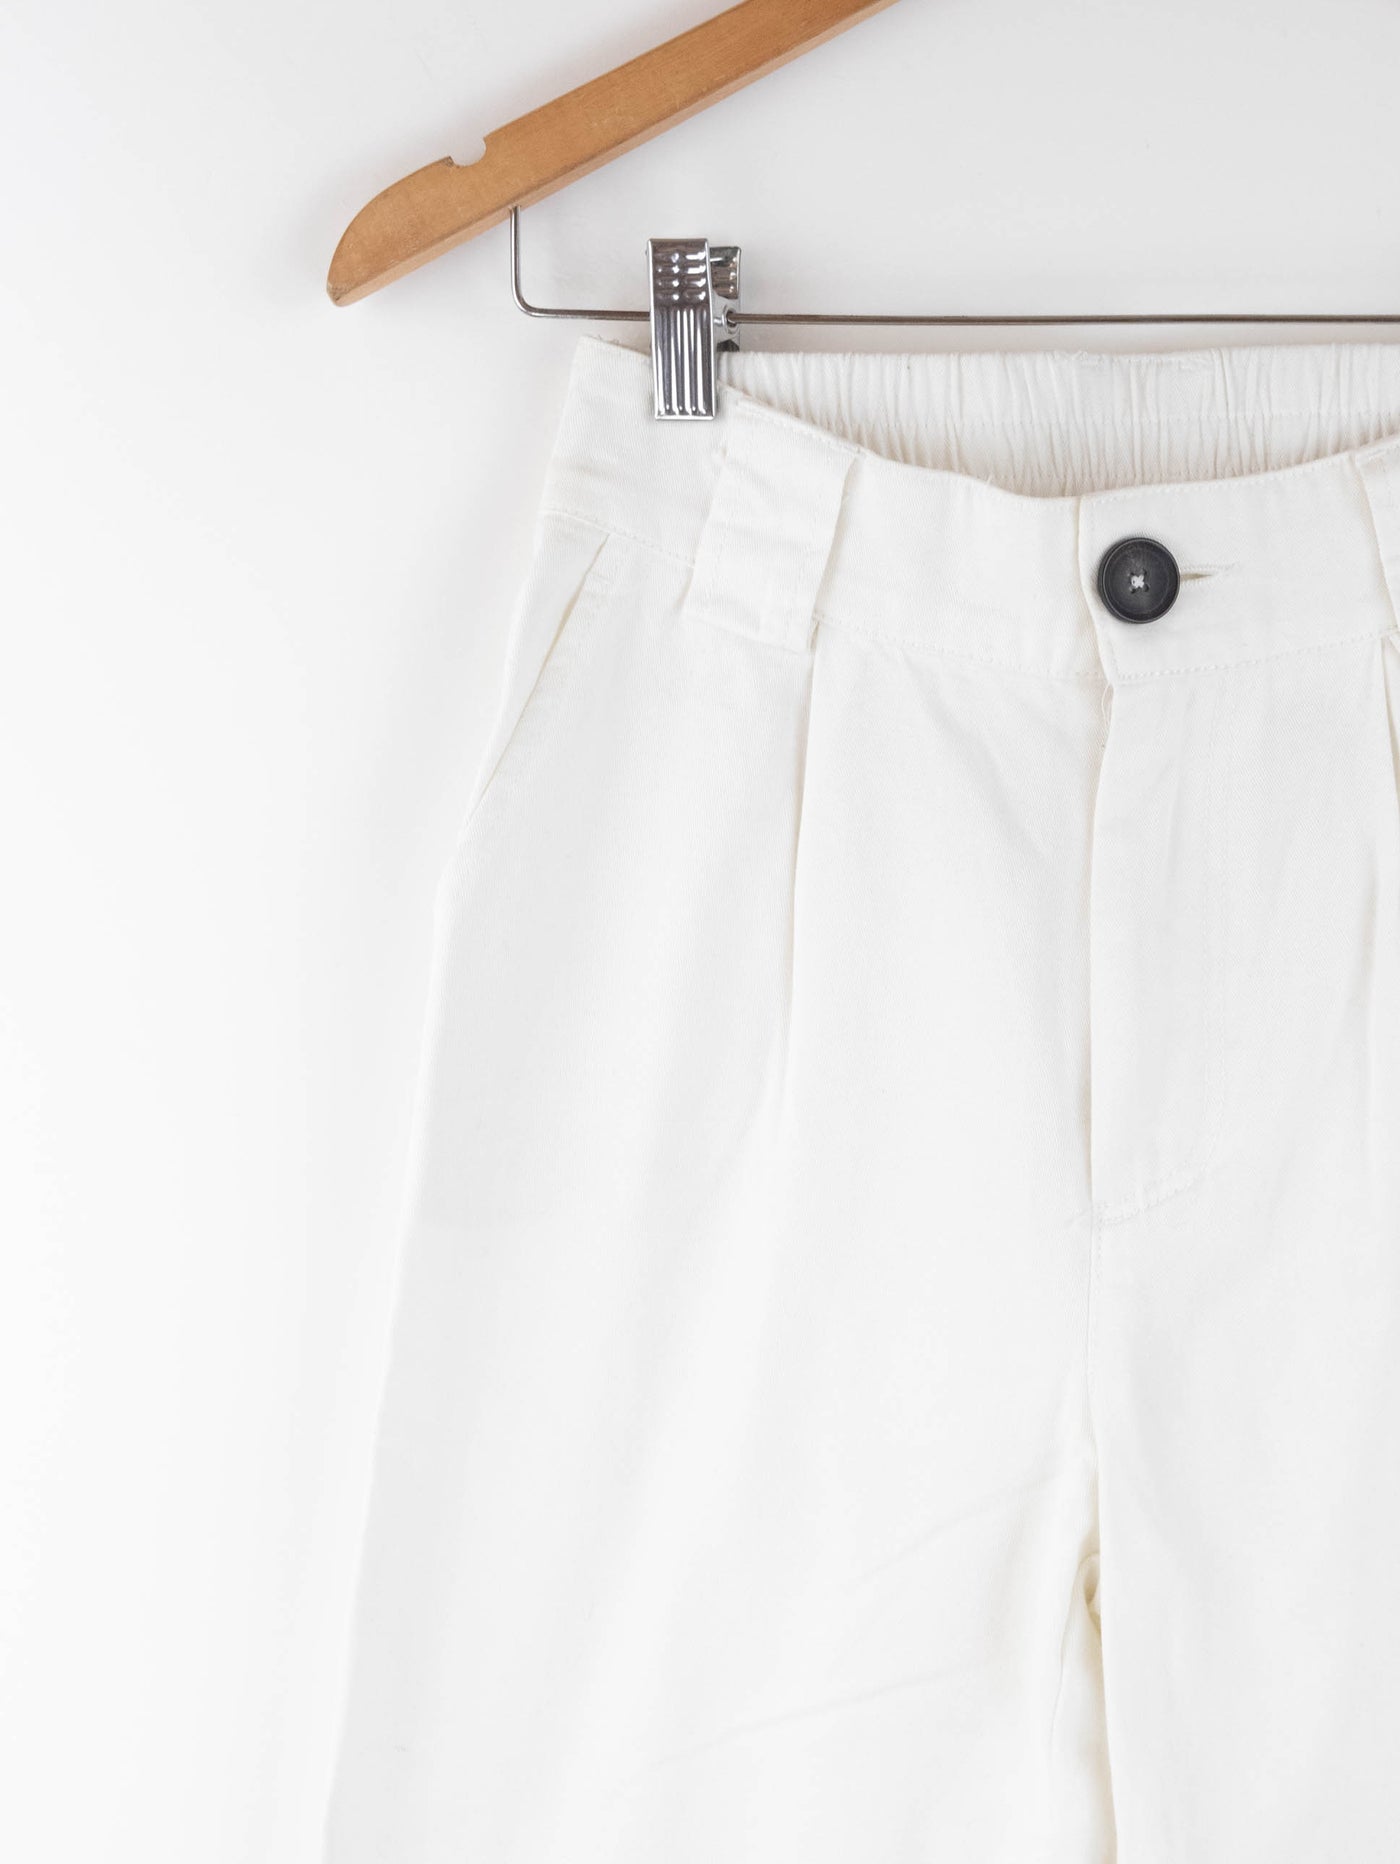 Pantalón de cargo con cadena plateada color blanco